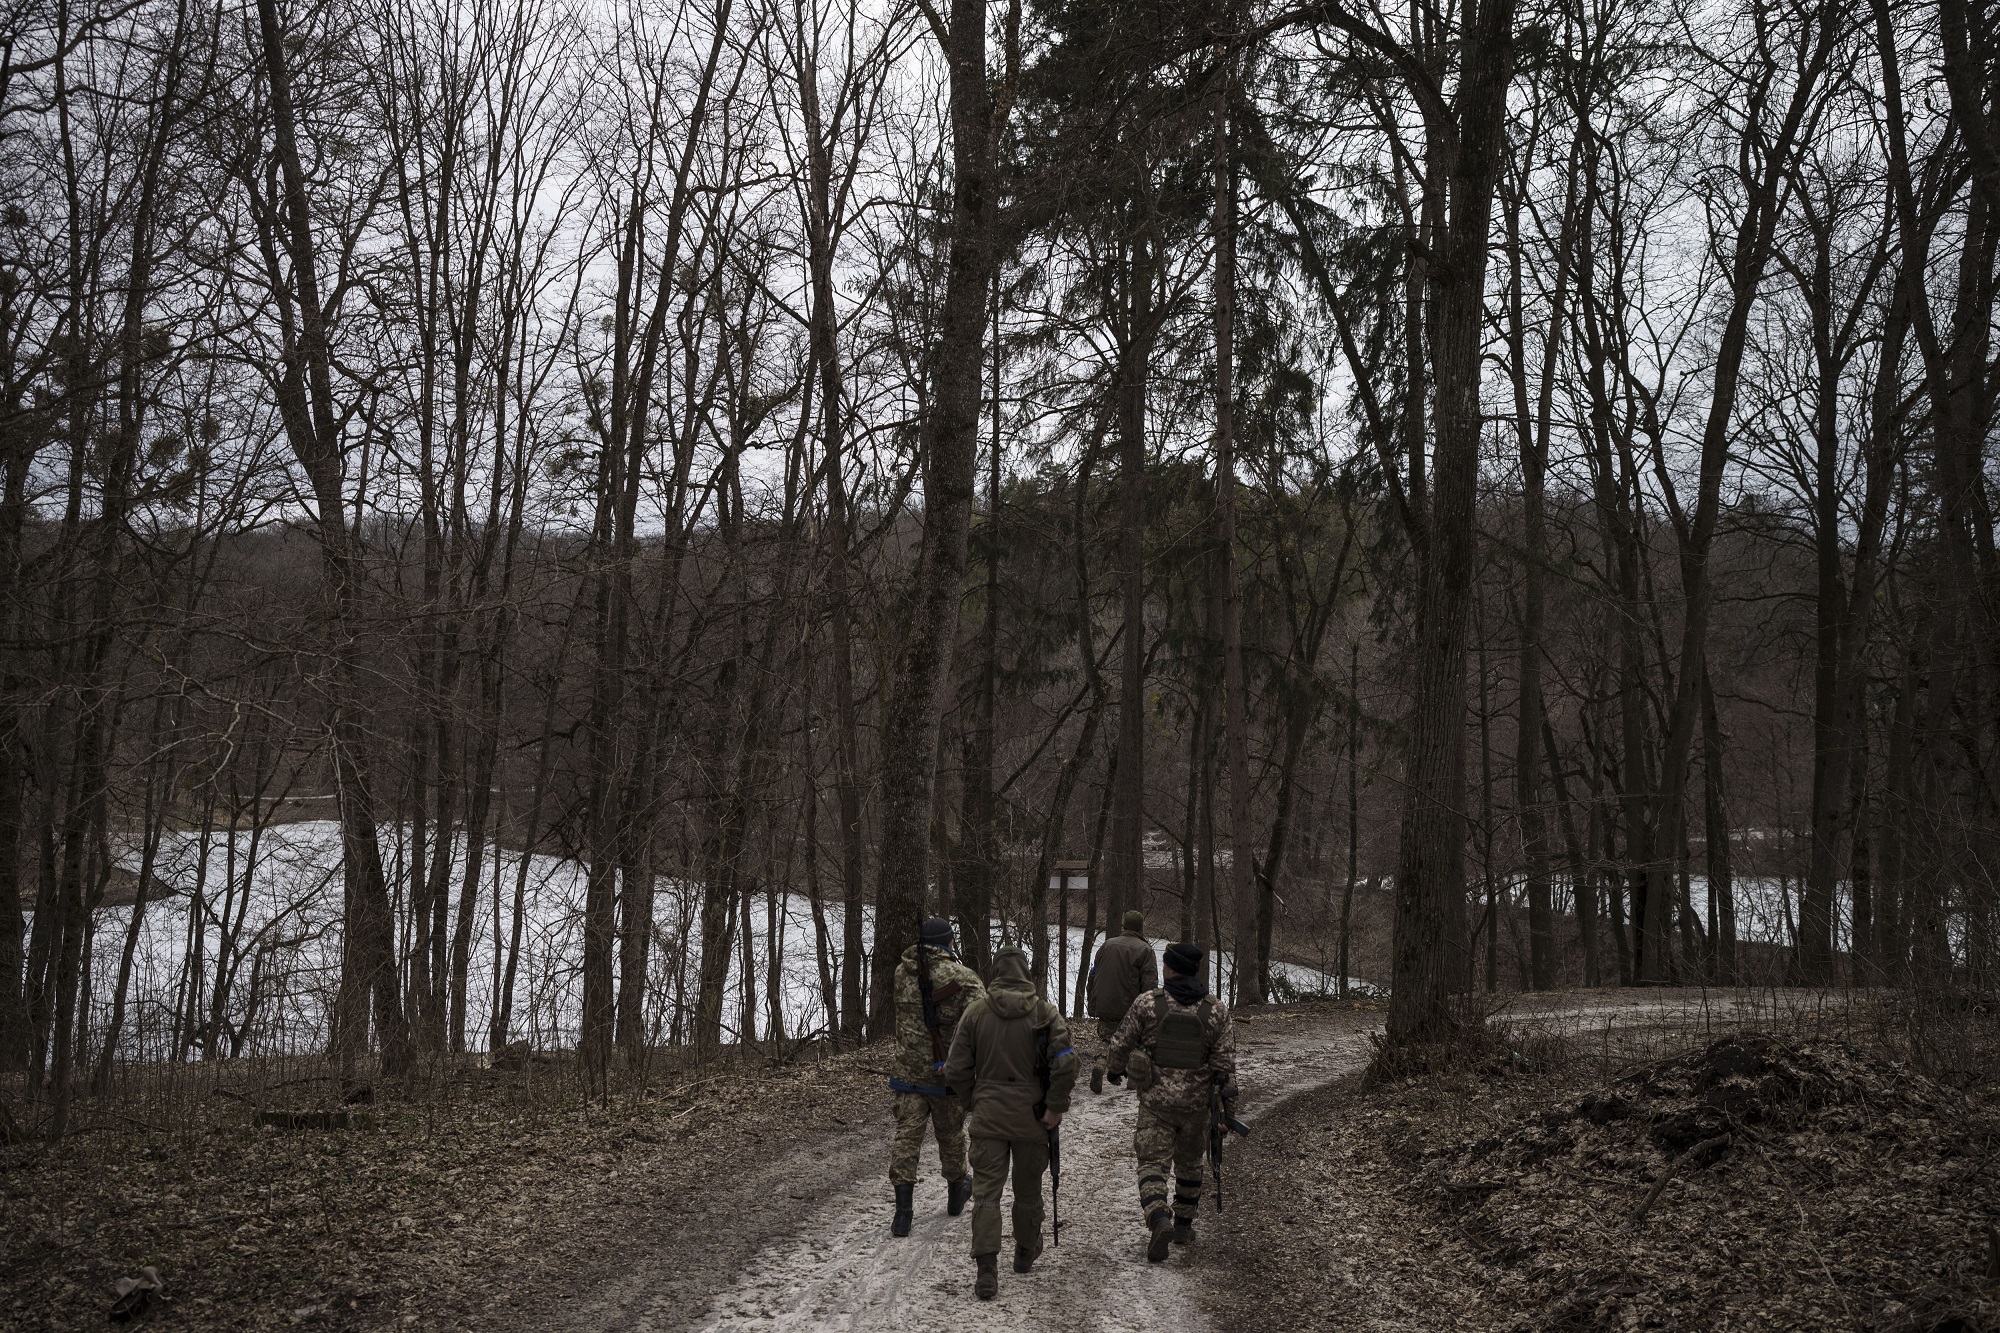 Ρωσικές αναφορές για πυροβολισμούς σε χωριό κοντά στα σύνορα με την Ουκρανία